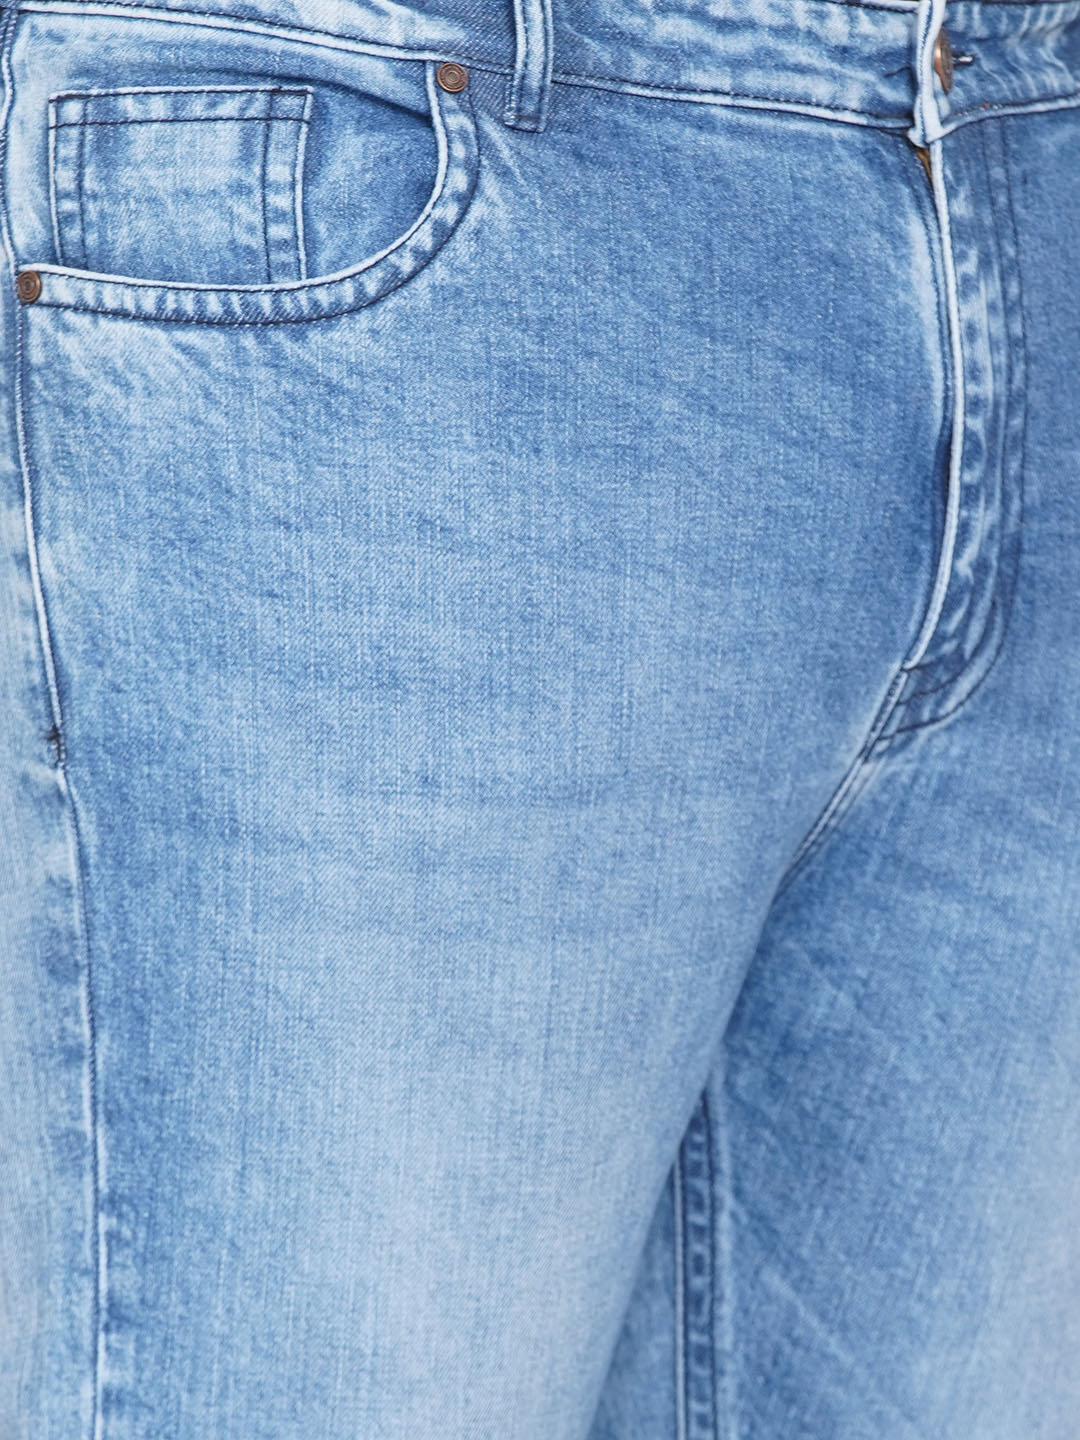 bottomwear/jeans/JPJ12251/jpj12251-2.jpg